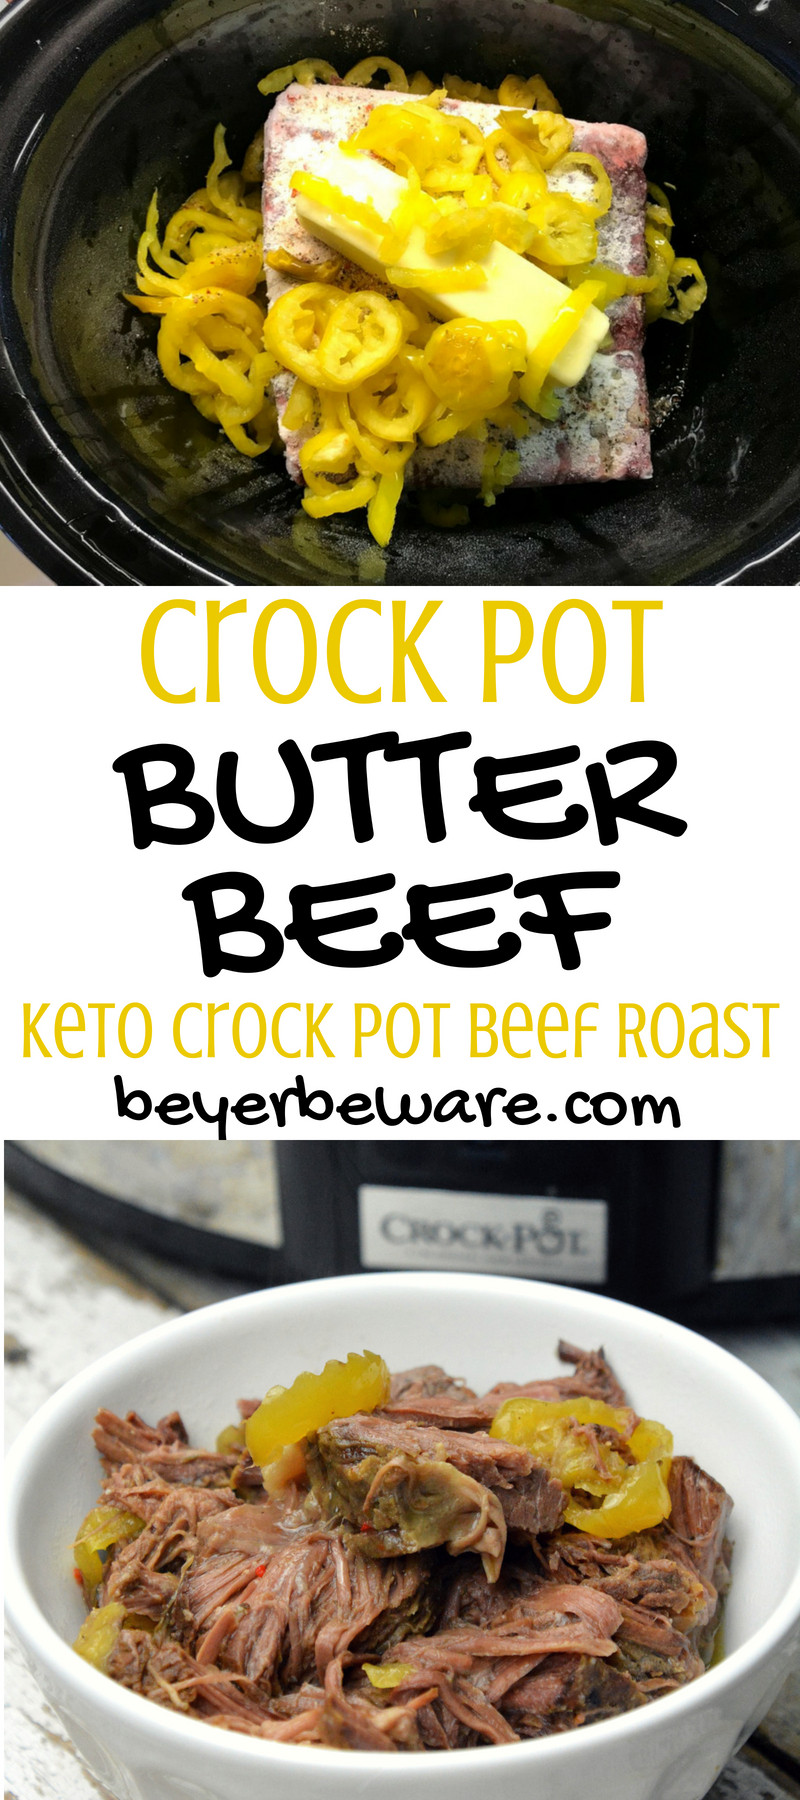 Beef Keto Crockpot Recipes
 Crock Pot Butter Beef Keto Crock Pot Beef Roast Beyer